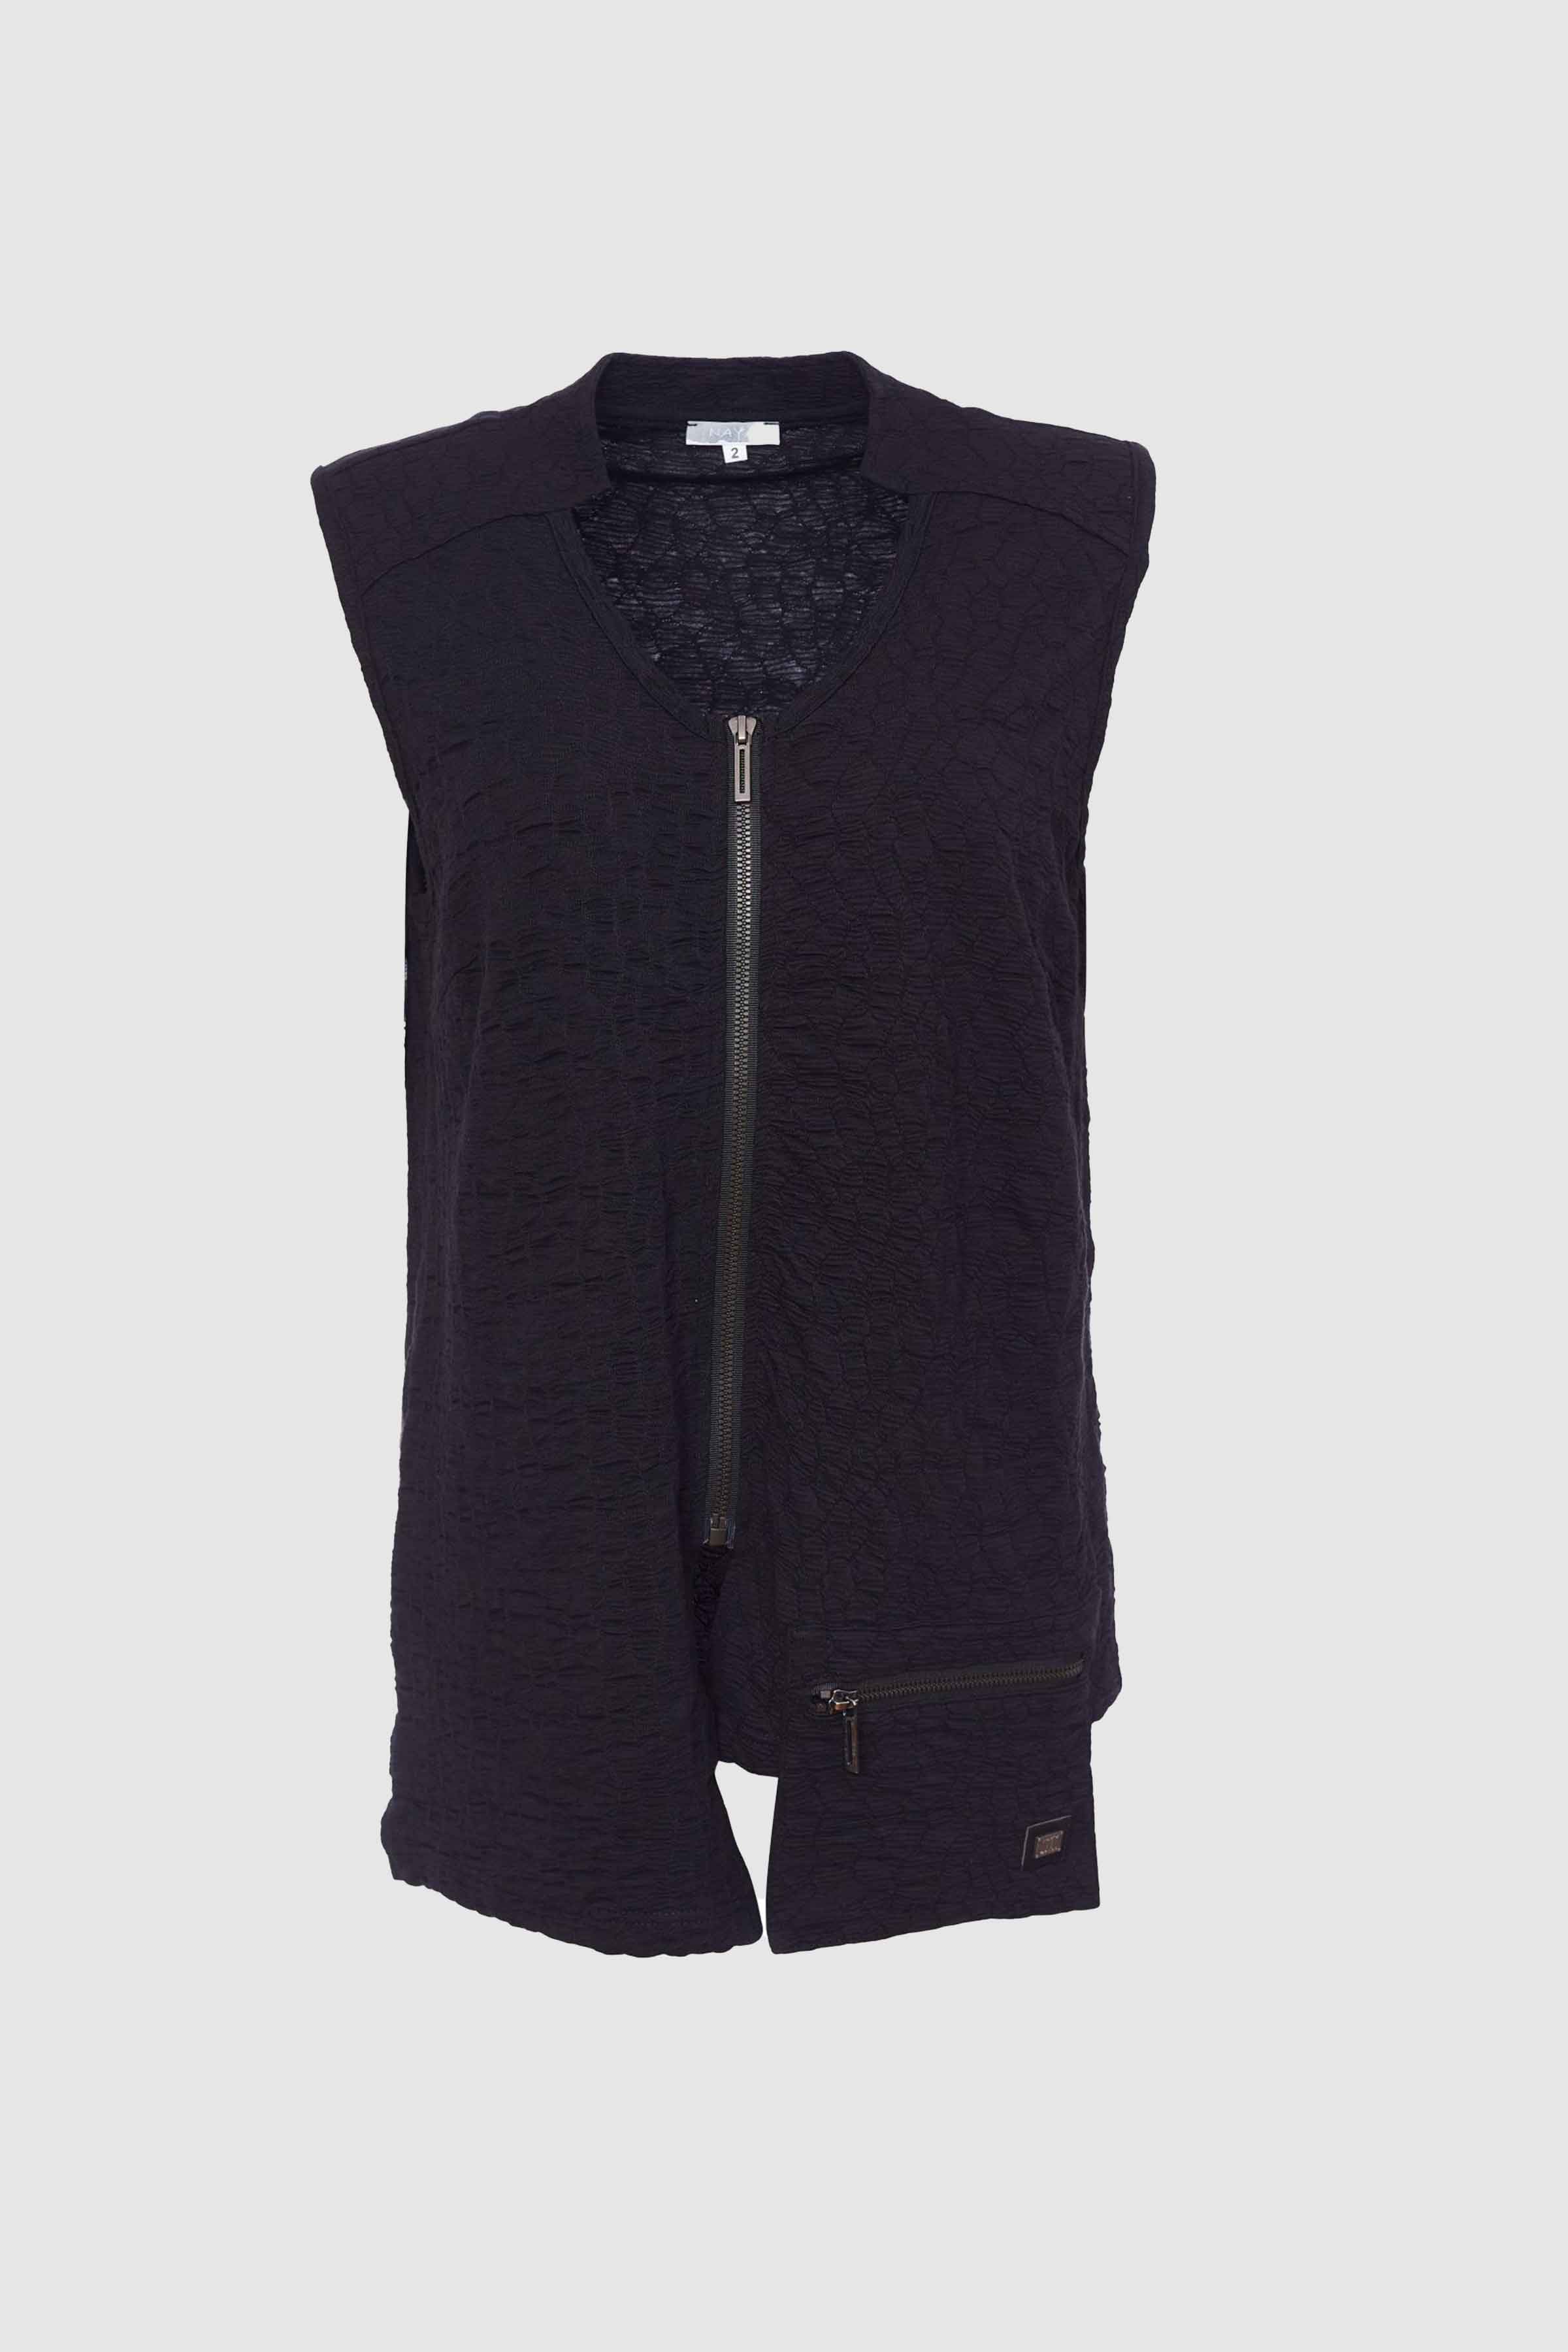 Waistcoat with Zip/Pocket in Black